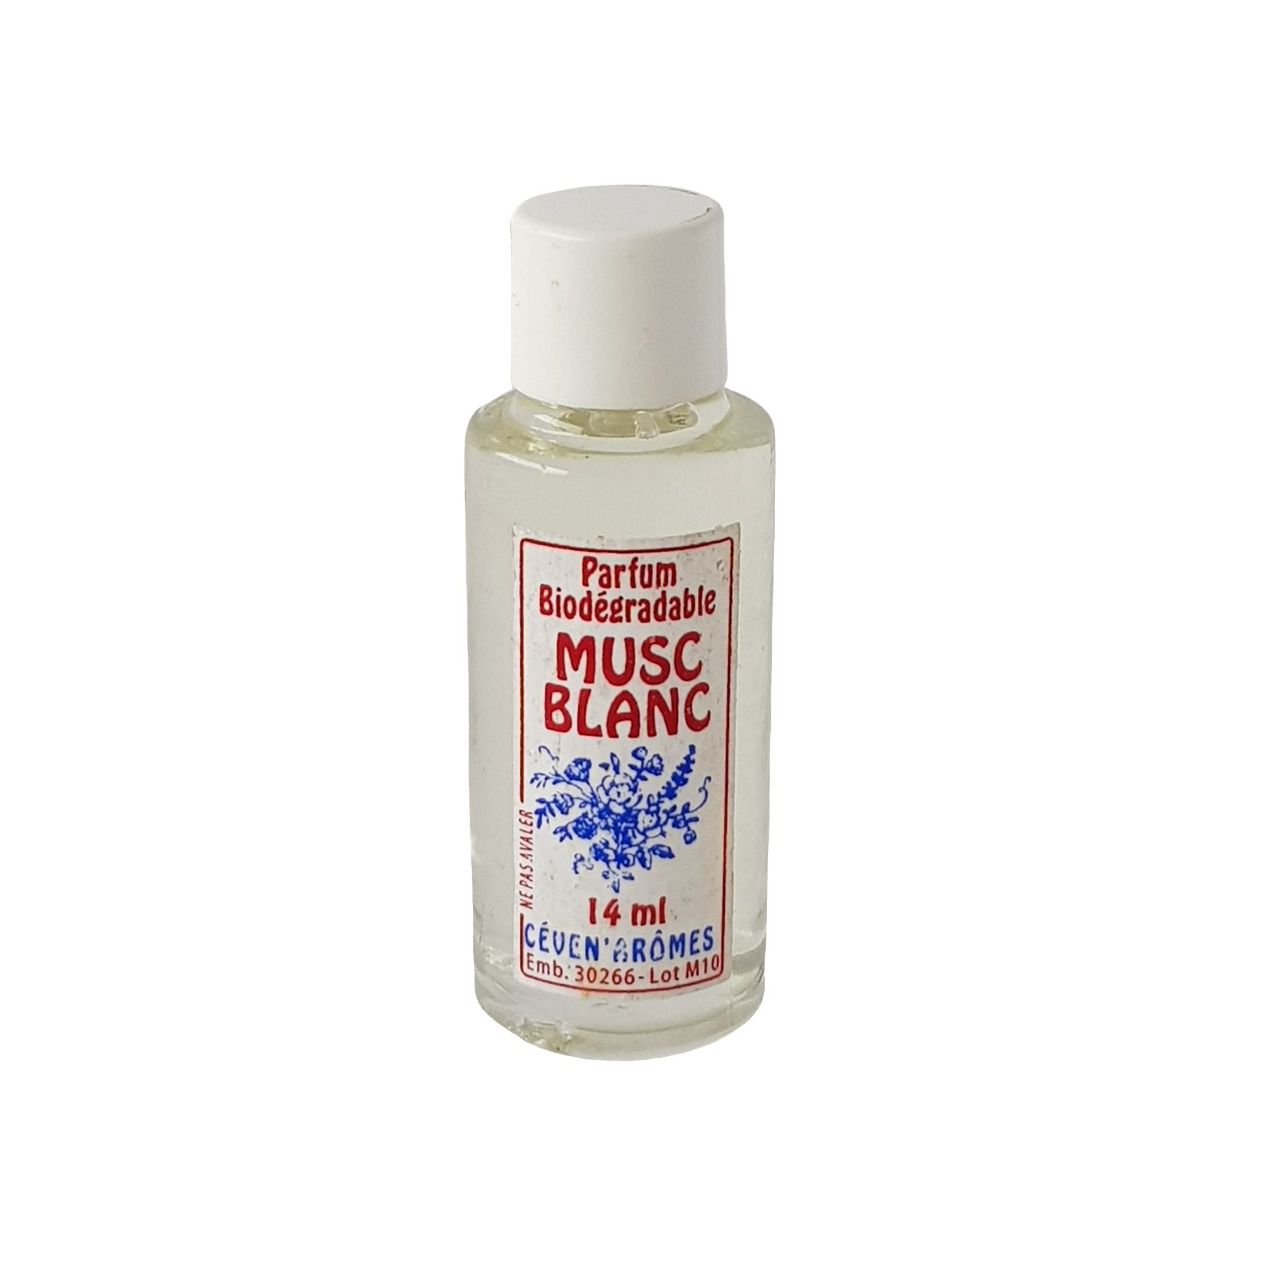 Extrait de parfum Musc blanc 14ml | CEVEN AROMES 